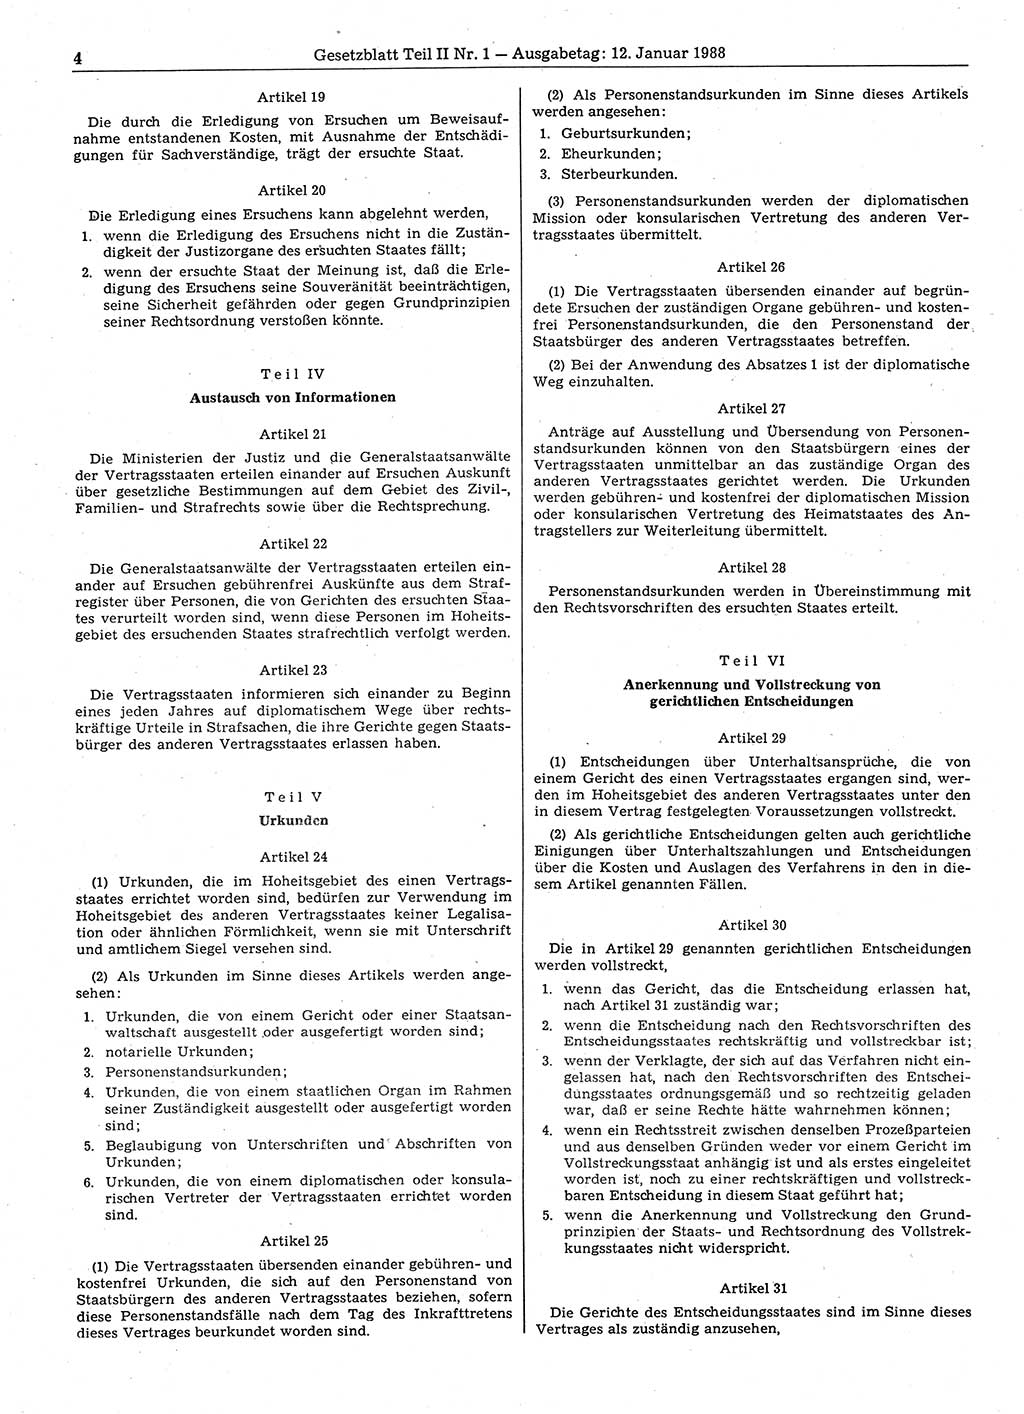 Gesetzblatt (GBl.) der Deutschen Demokratischen Republik (DDR) Teil ⅠⅠ 1988, Seite 4 (GBl. DDR ⅠⅠ 1988, S. 4)